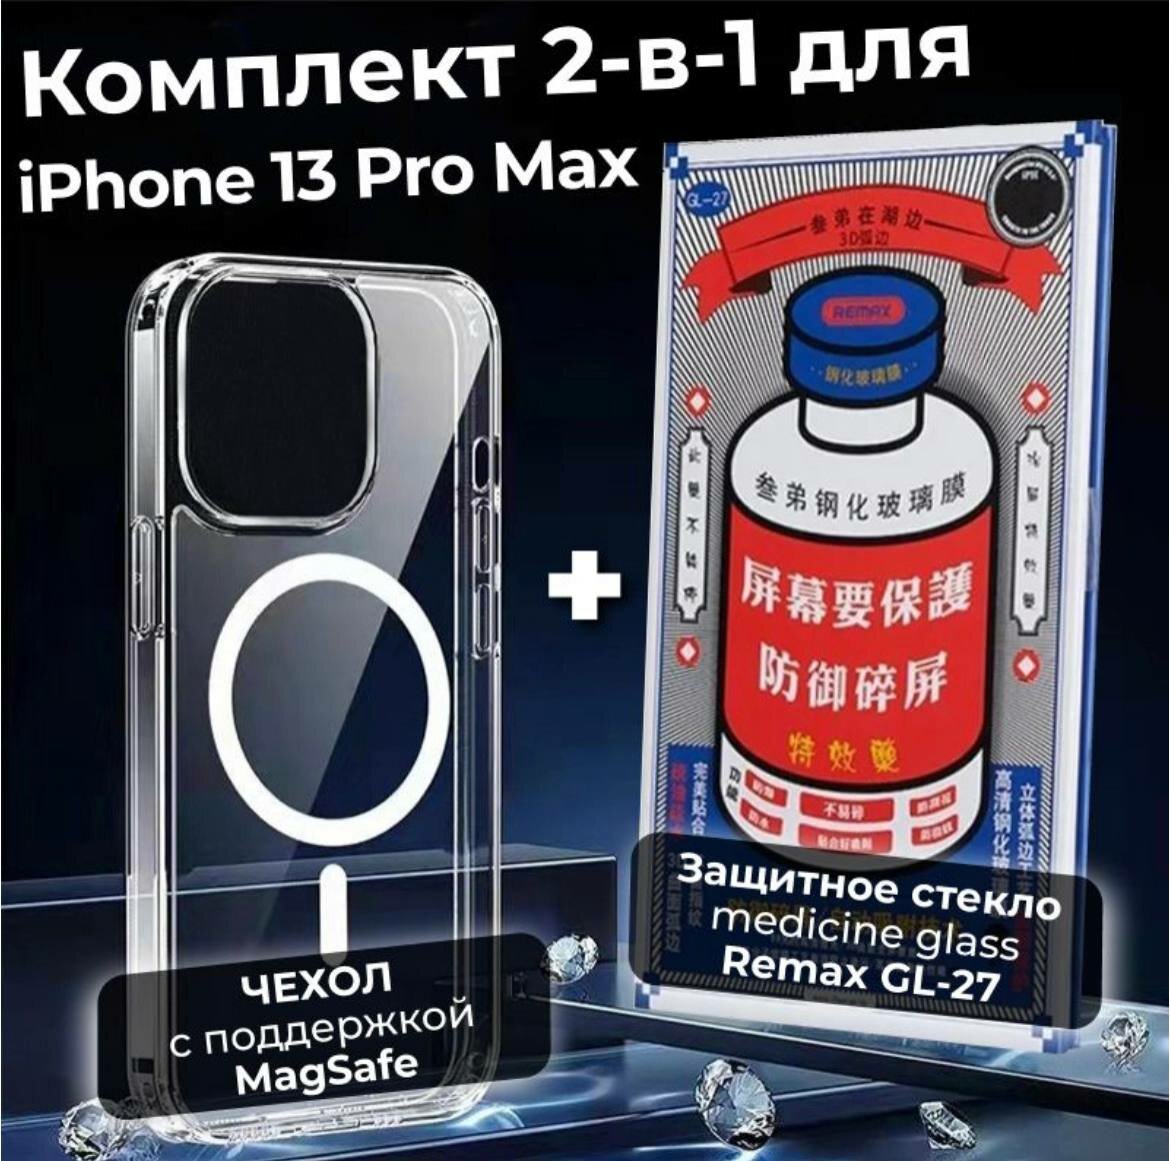 Комплект 2-в-1: Защитное стекло REMAX GL-27 на Apple iPhone 13 PRO MAX + Силиконовый чехол с поддержкой Magsafe